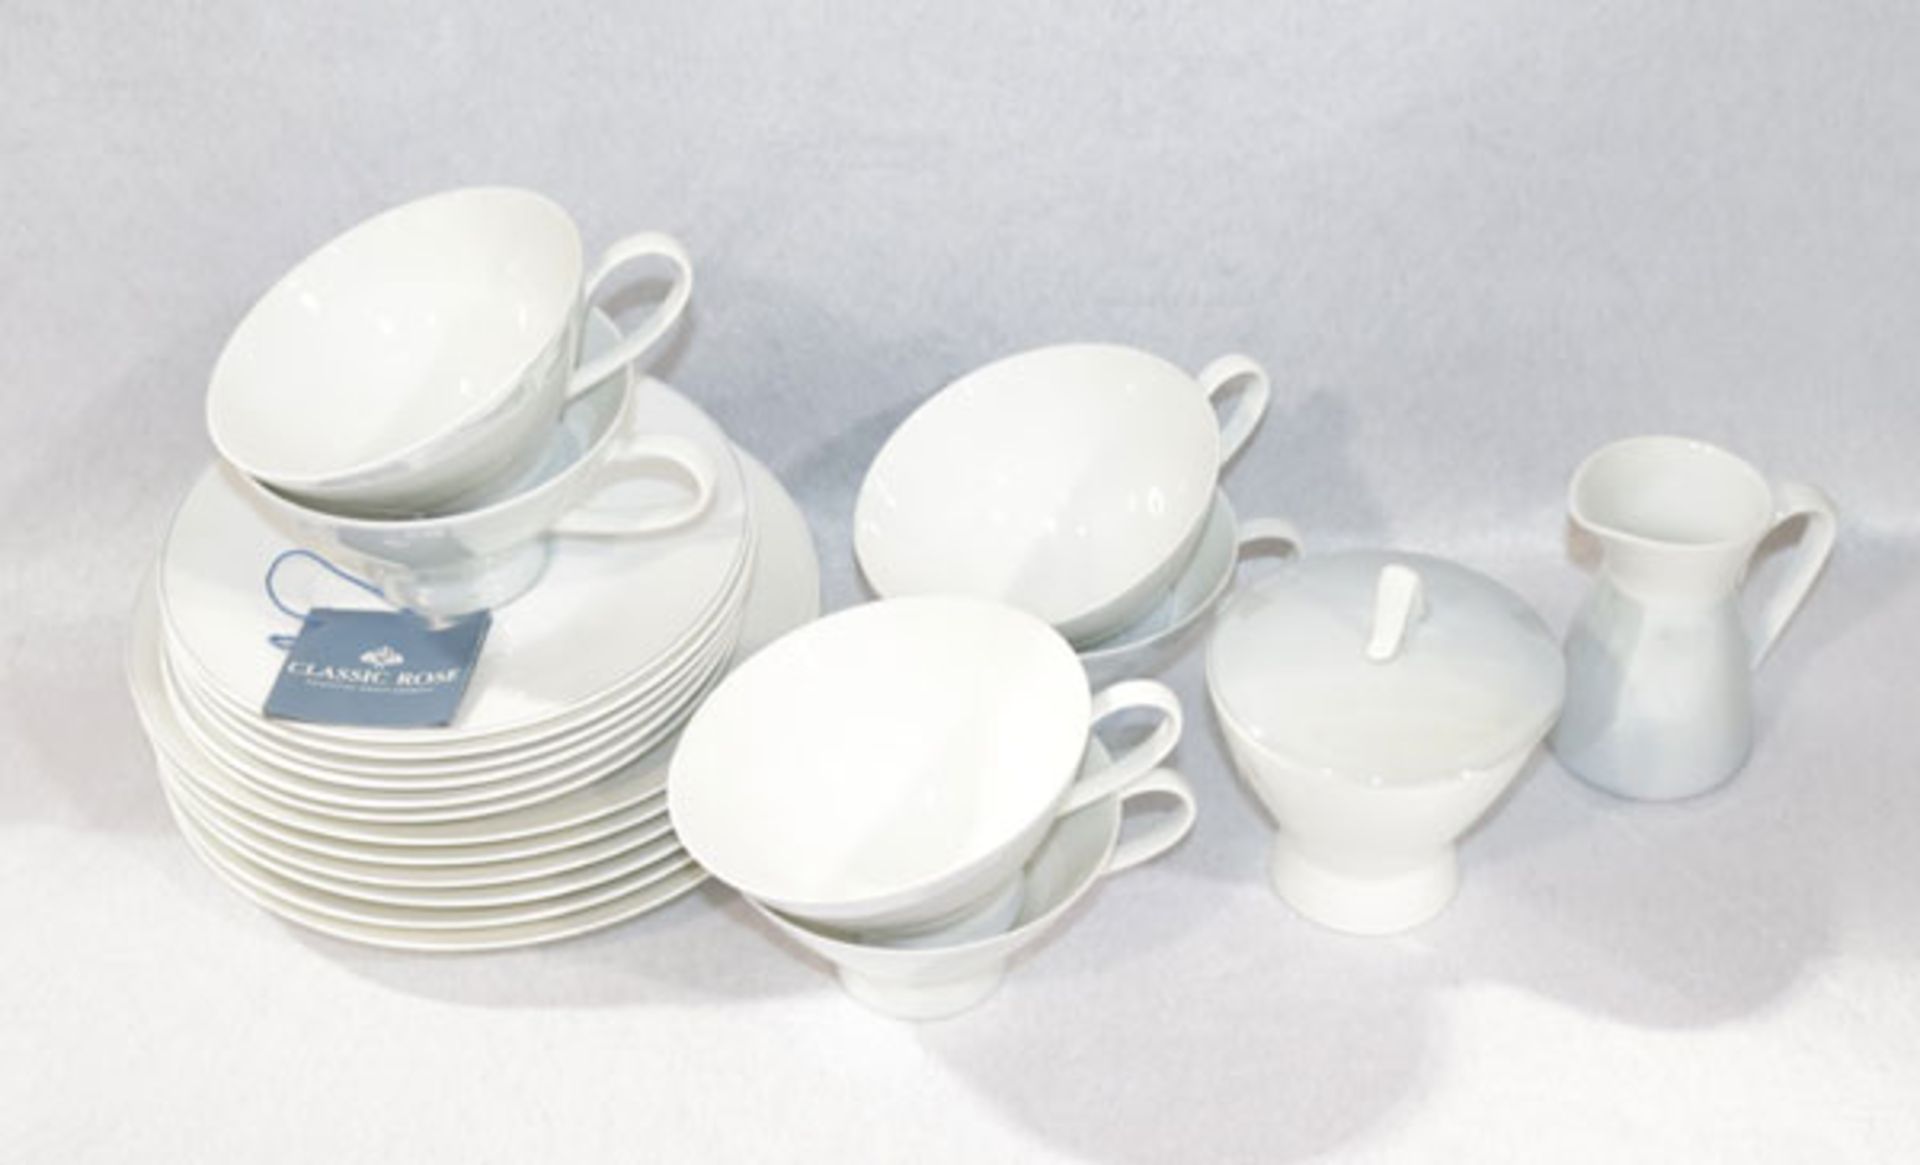 Rosenthal Tee-Geschirrteile, Form 2000, Secunda grau, Design Loewy, Milch und Zucker, 6 Tee-Tassen